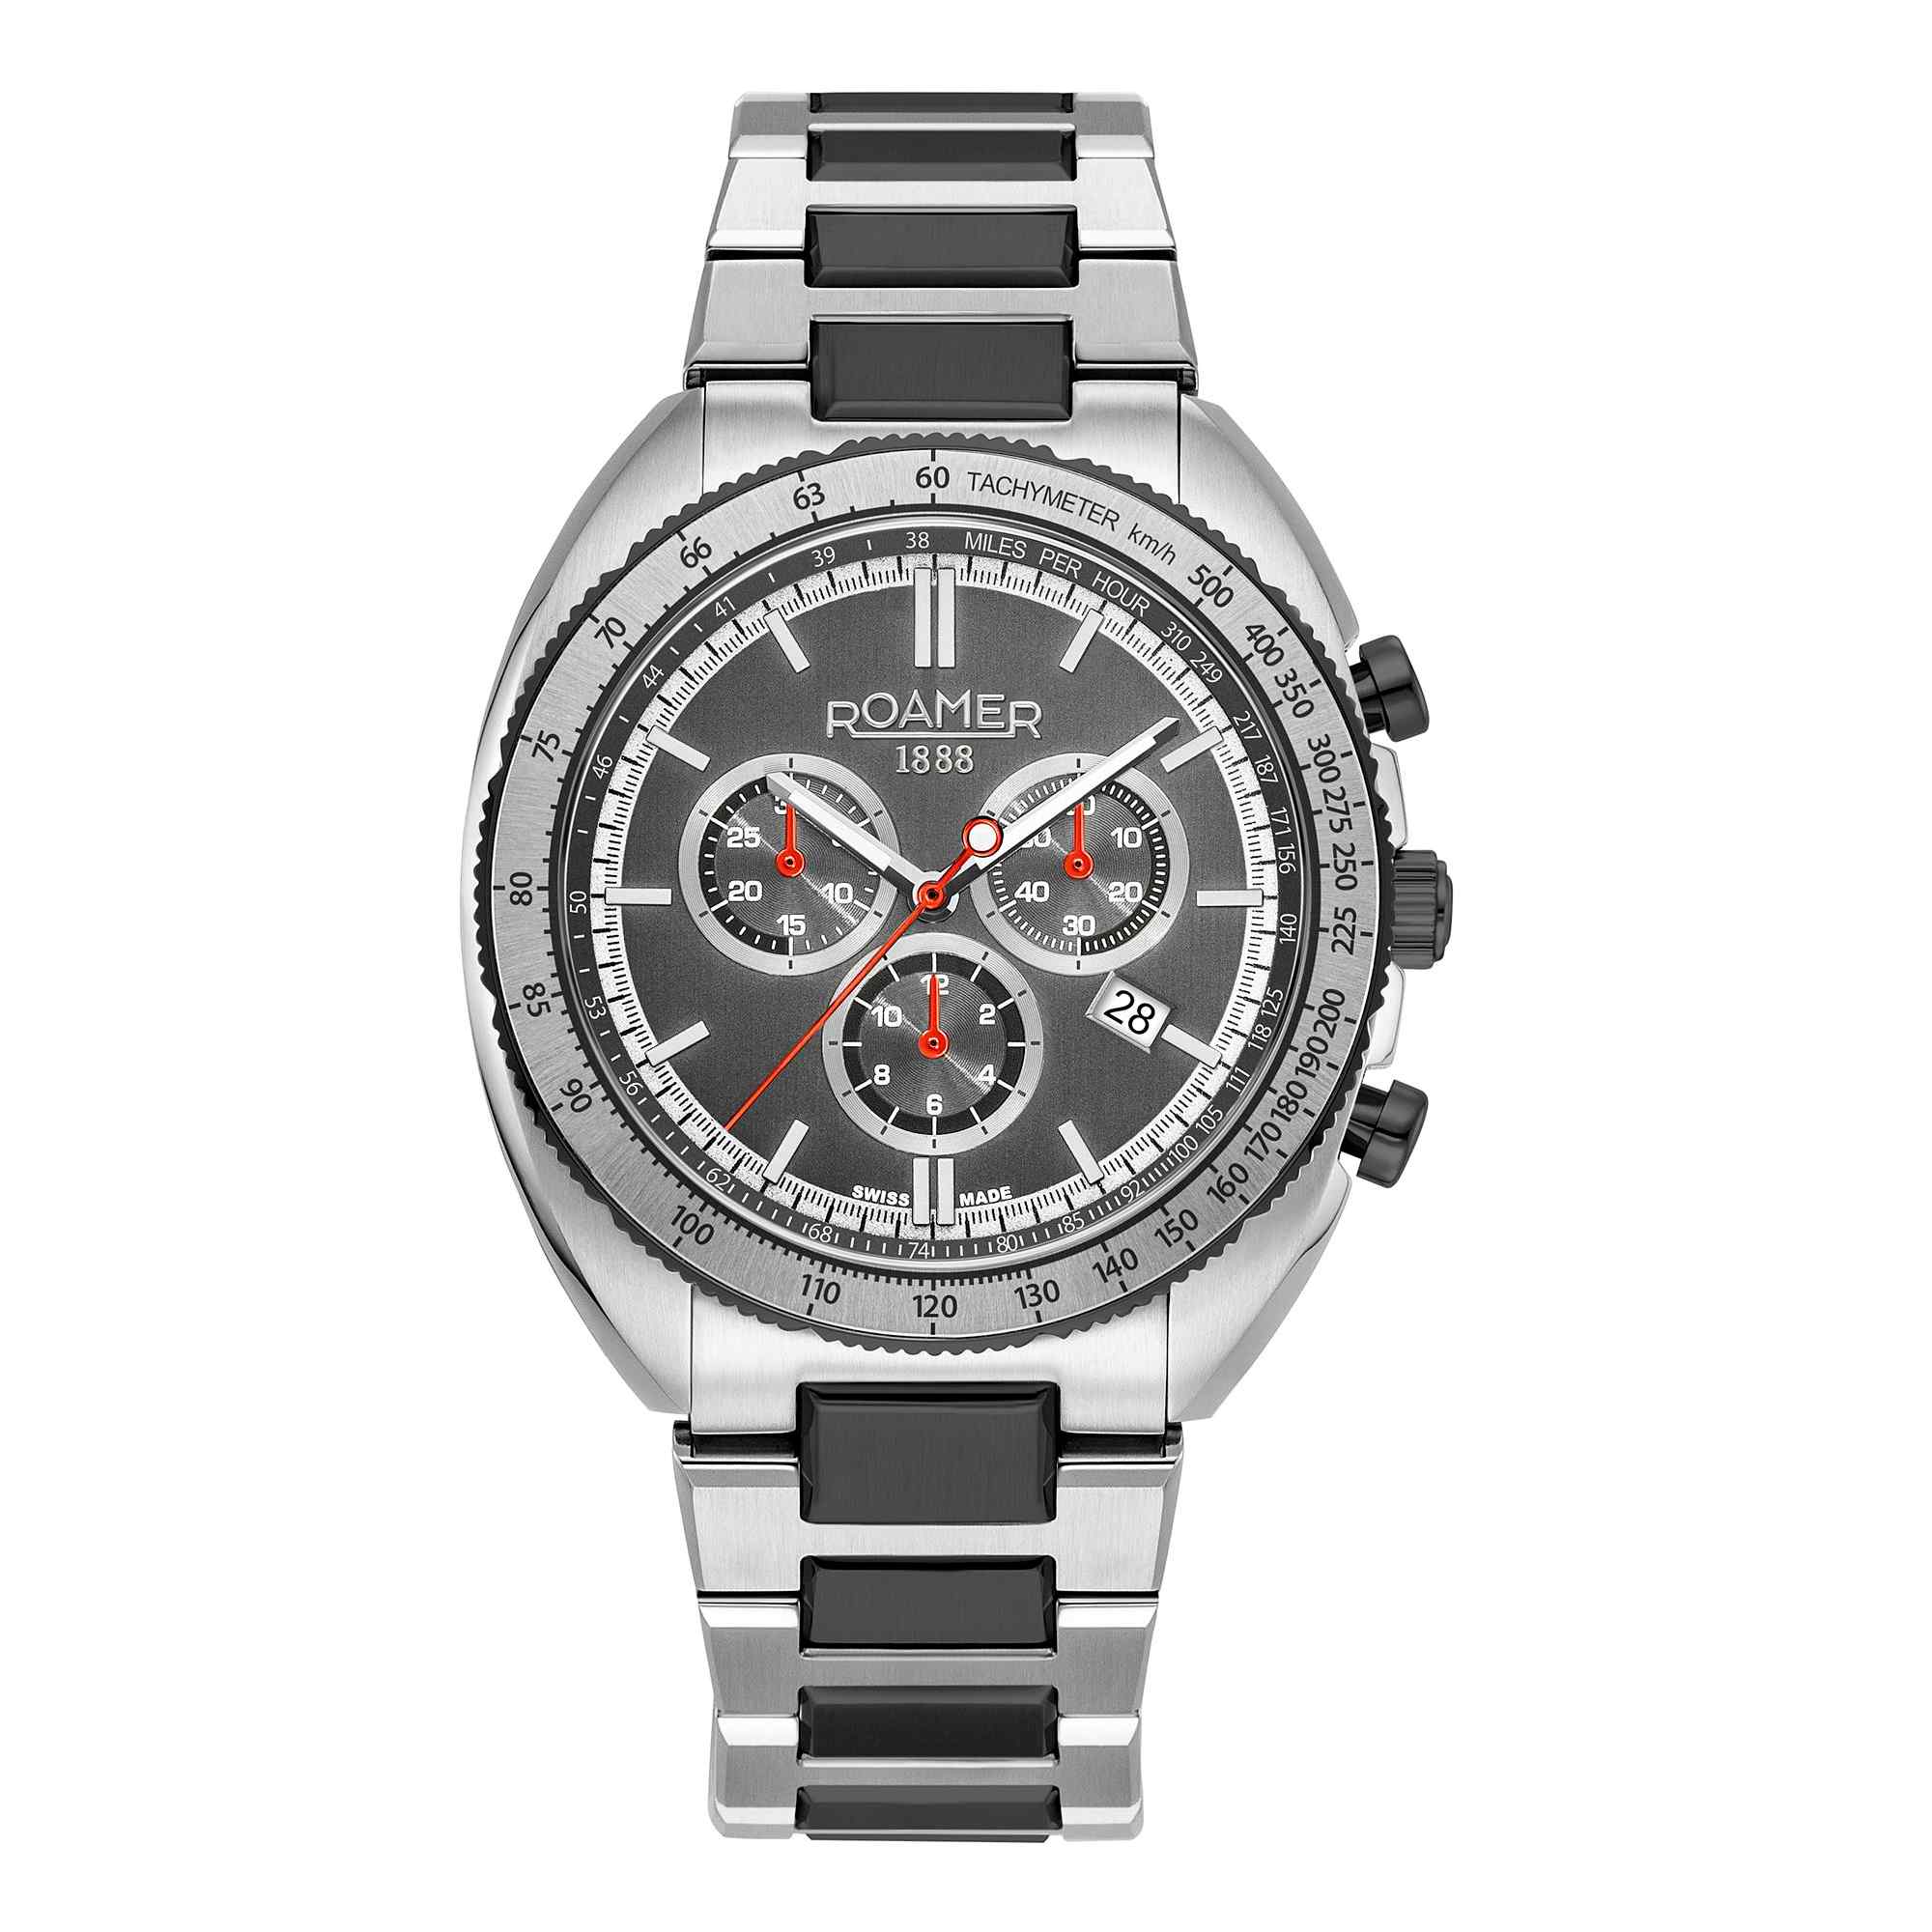 Photos - Wrist Watch Roamer 868837 45 85 70 Men's Power Chronograph Wristwatch 